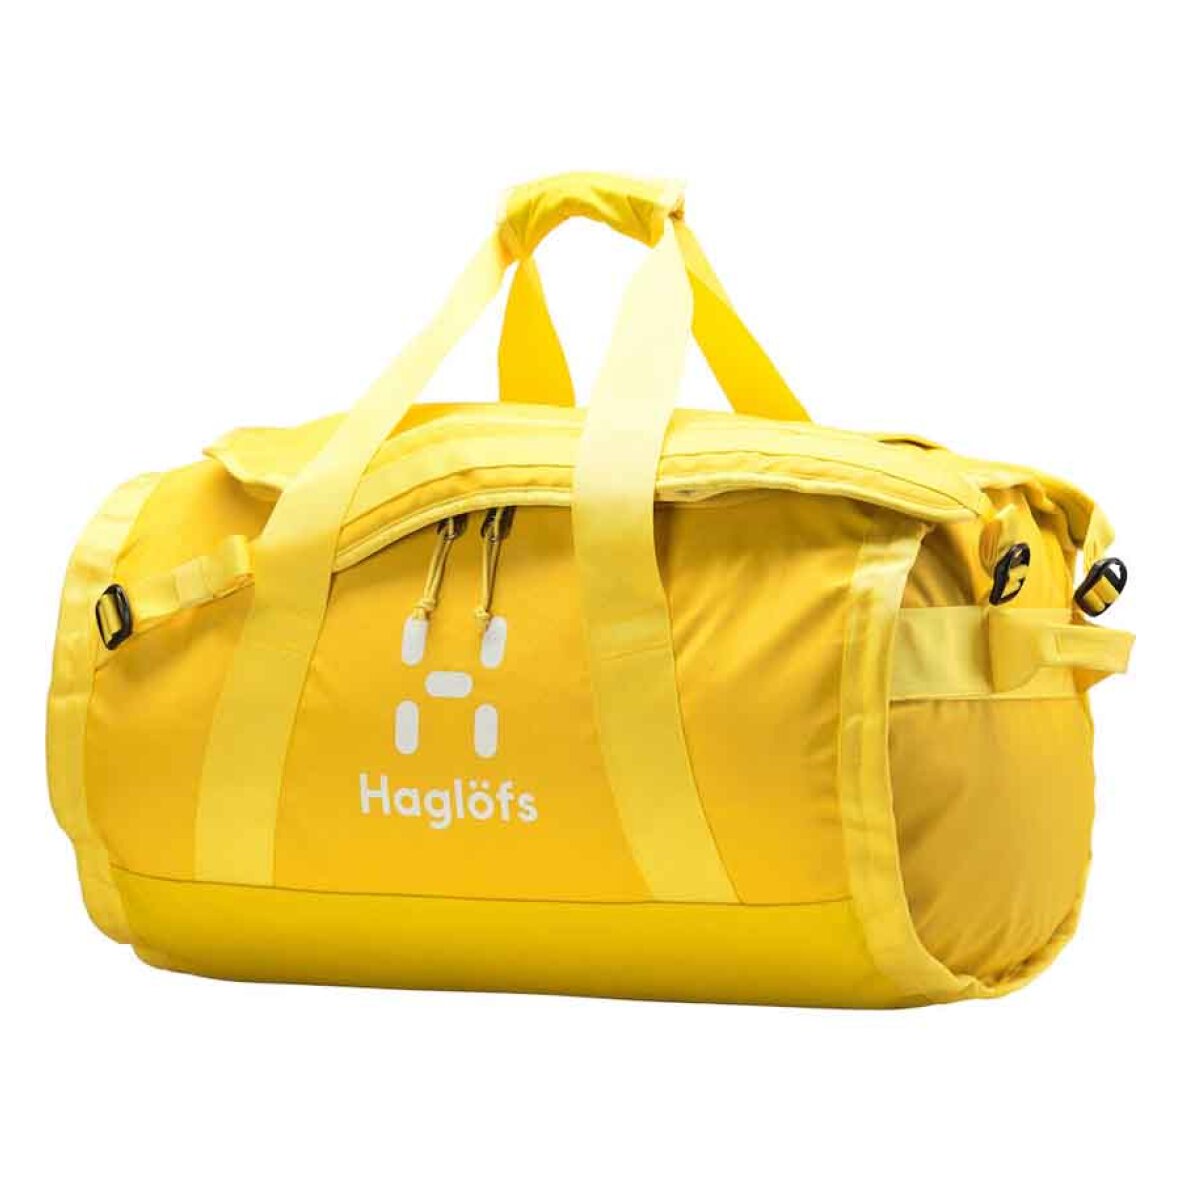 Modtagelig for praktiseret af Haglöfs Lava 50 duffelbag: Køb en rummelig og praktisk taske